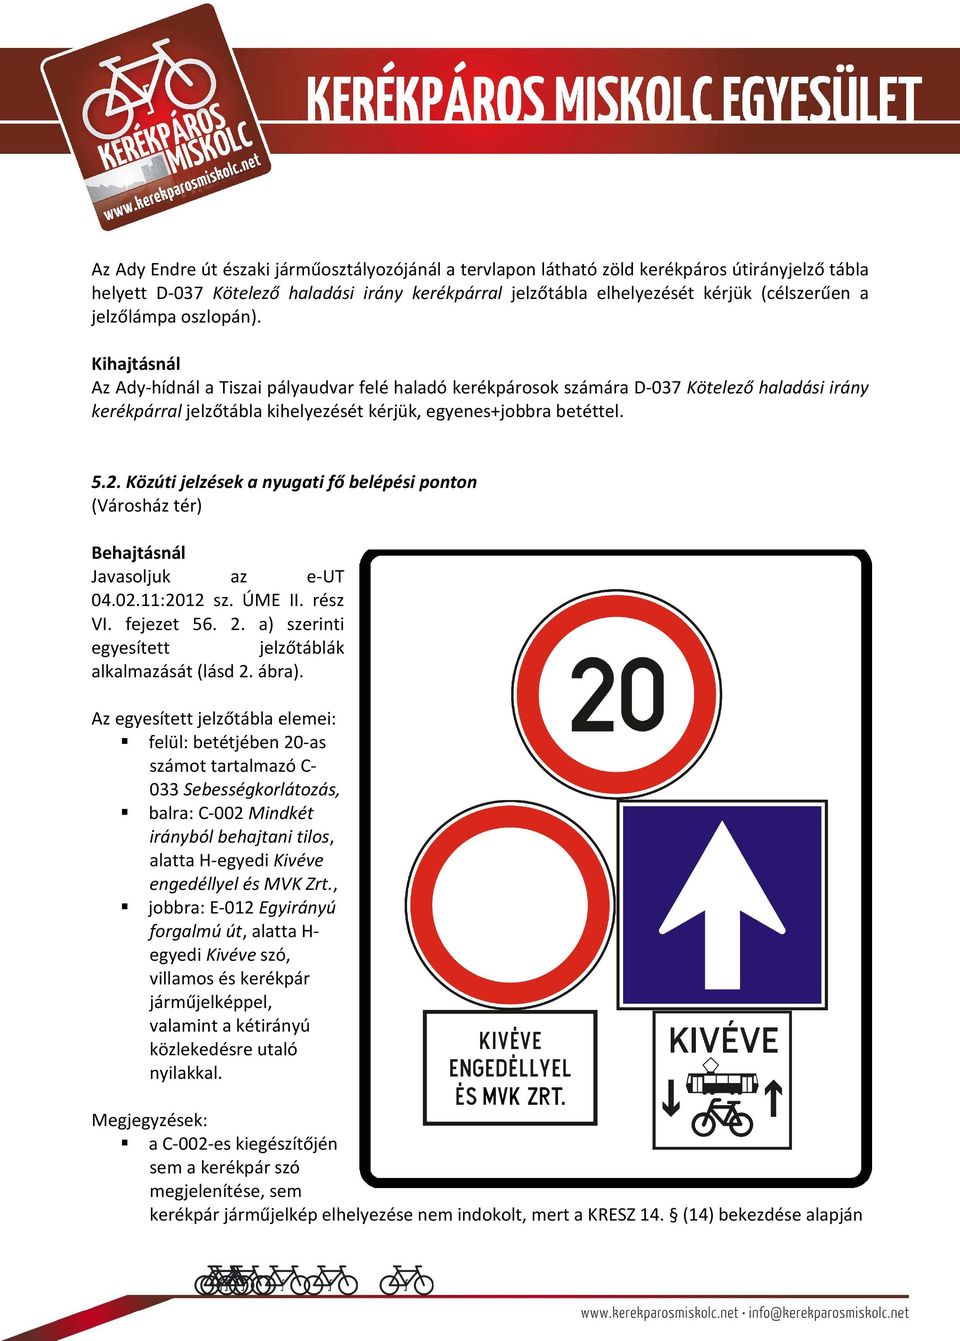 5.2. Közúti jelzések a nyugati fő belépési ponton (Városház tér) Behajtásnál Javasoljuk az e-ut 04.02.11:2012 sz. ÚME II. rész VI. fejezet 56. 2.